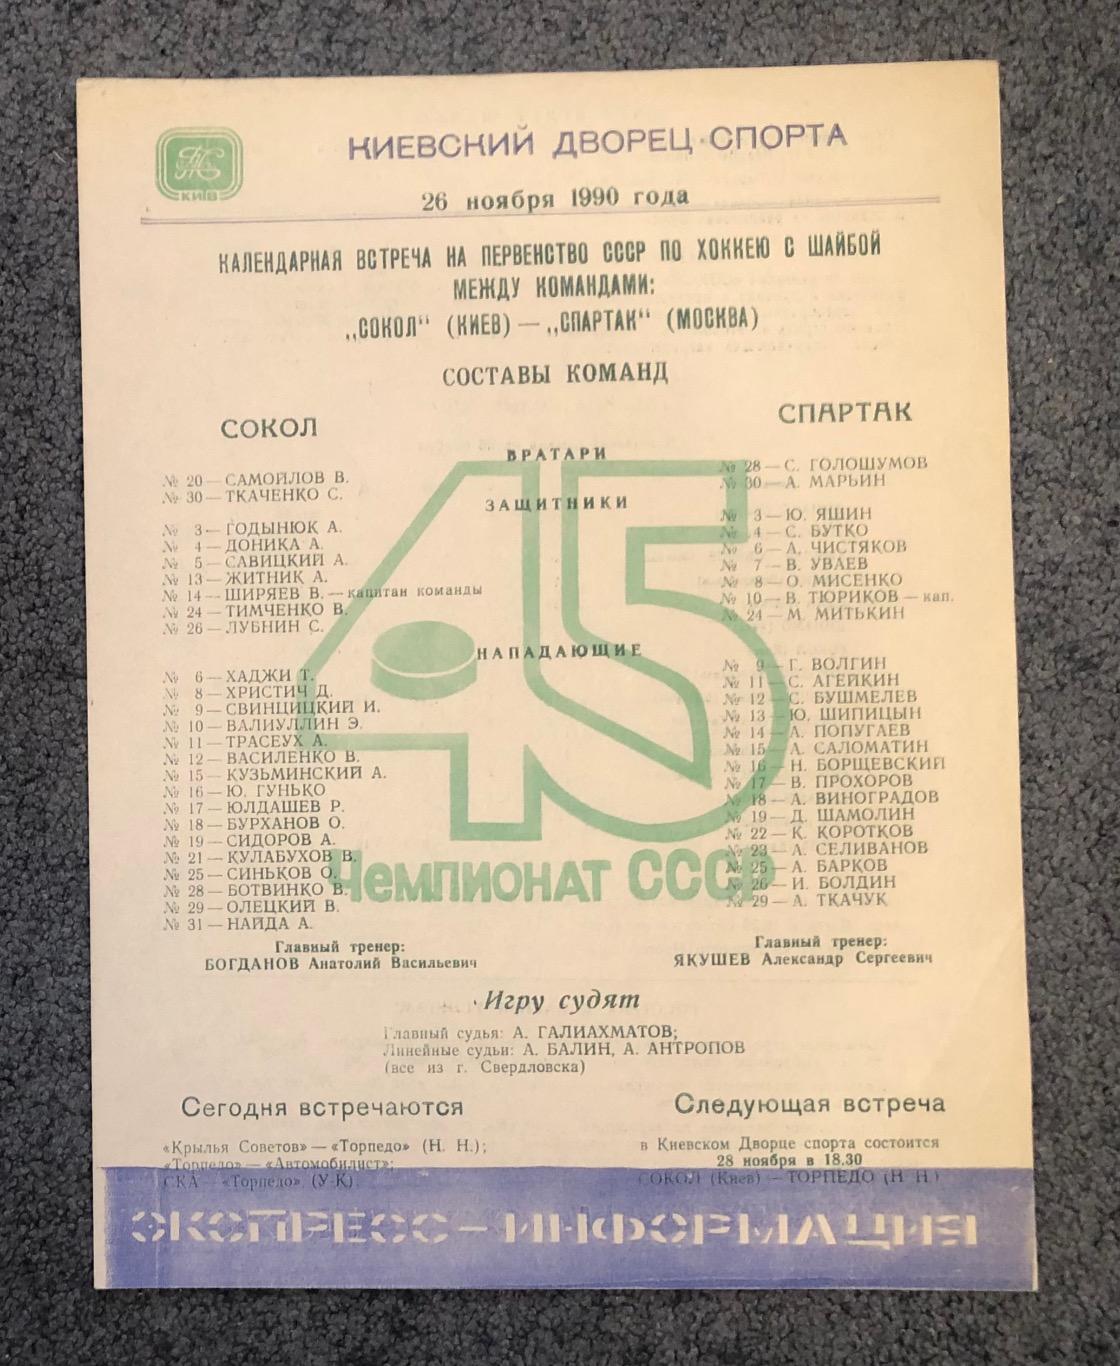 Сокол Киев - Спартак Москва, 26.11.1990